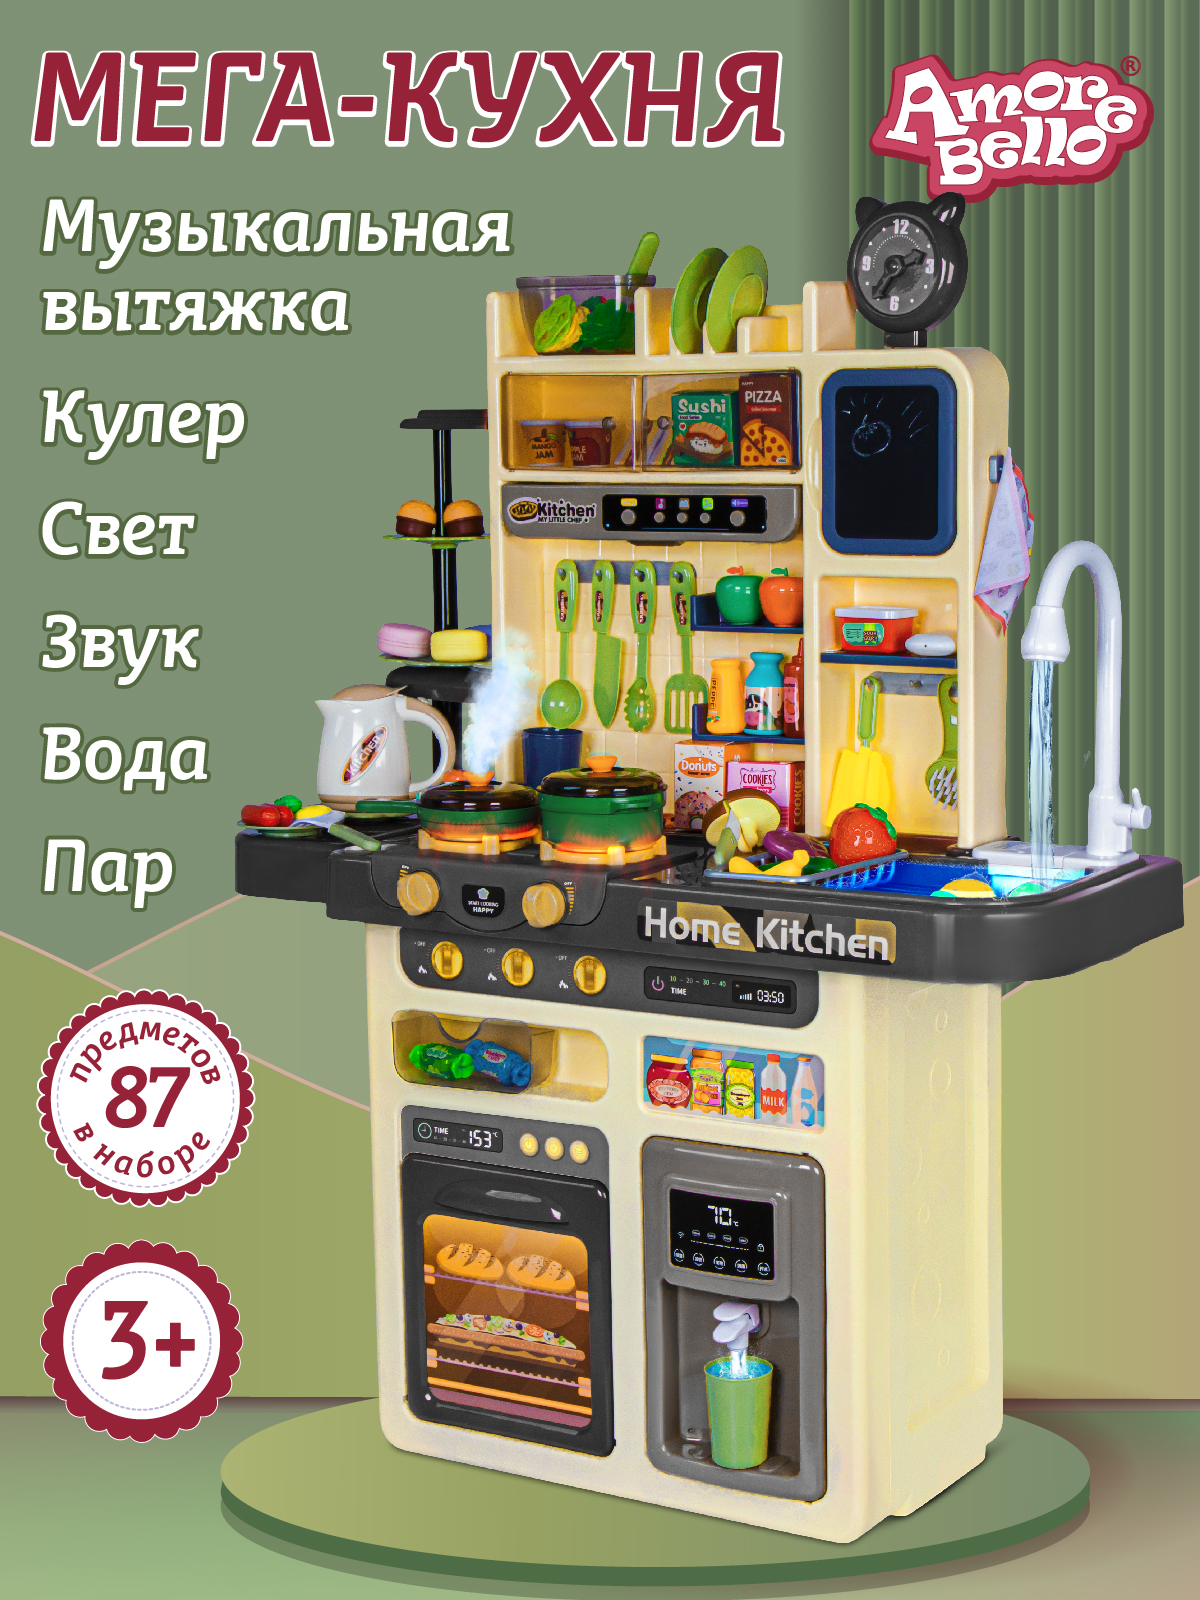 Игровой набор Amore Bello Кухня со световыми и звуковыми эффектами JB0211650 игровой модуль кухня